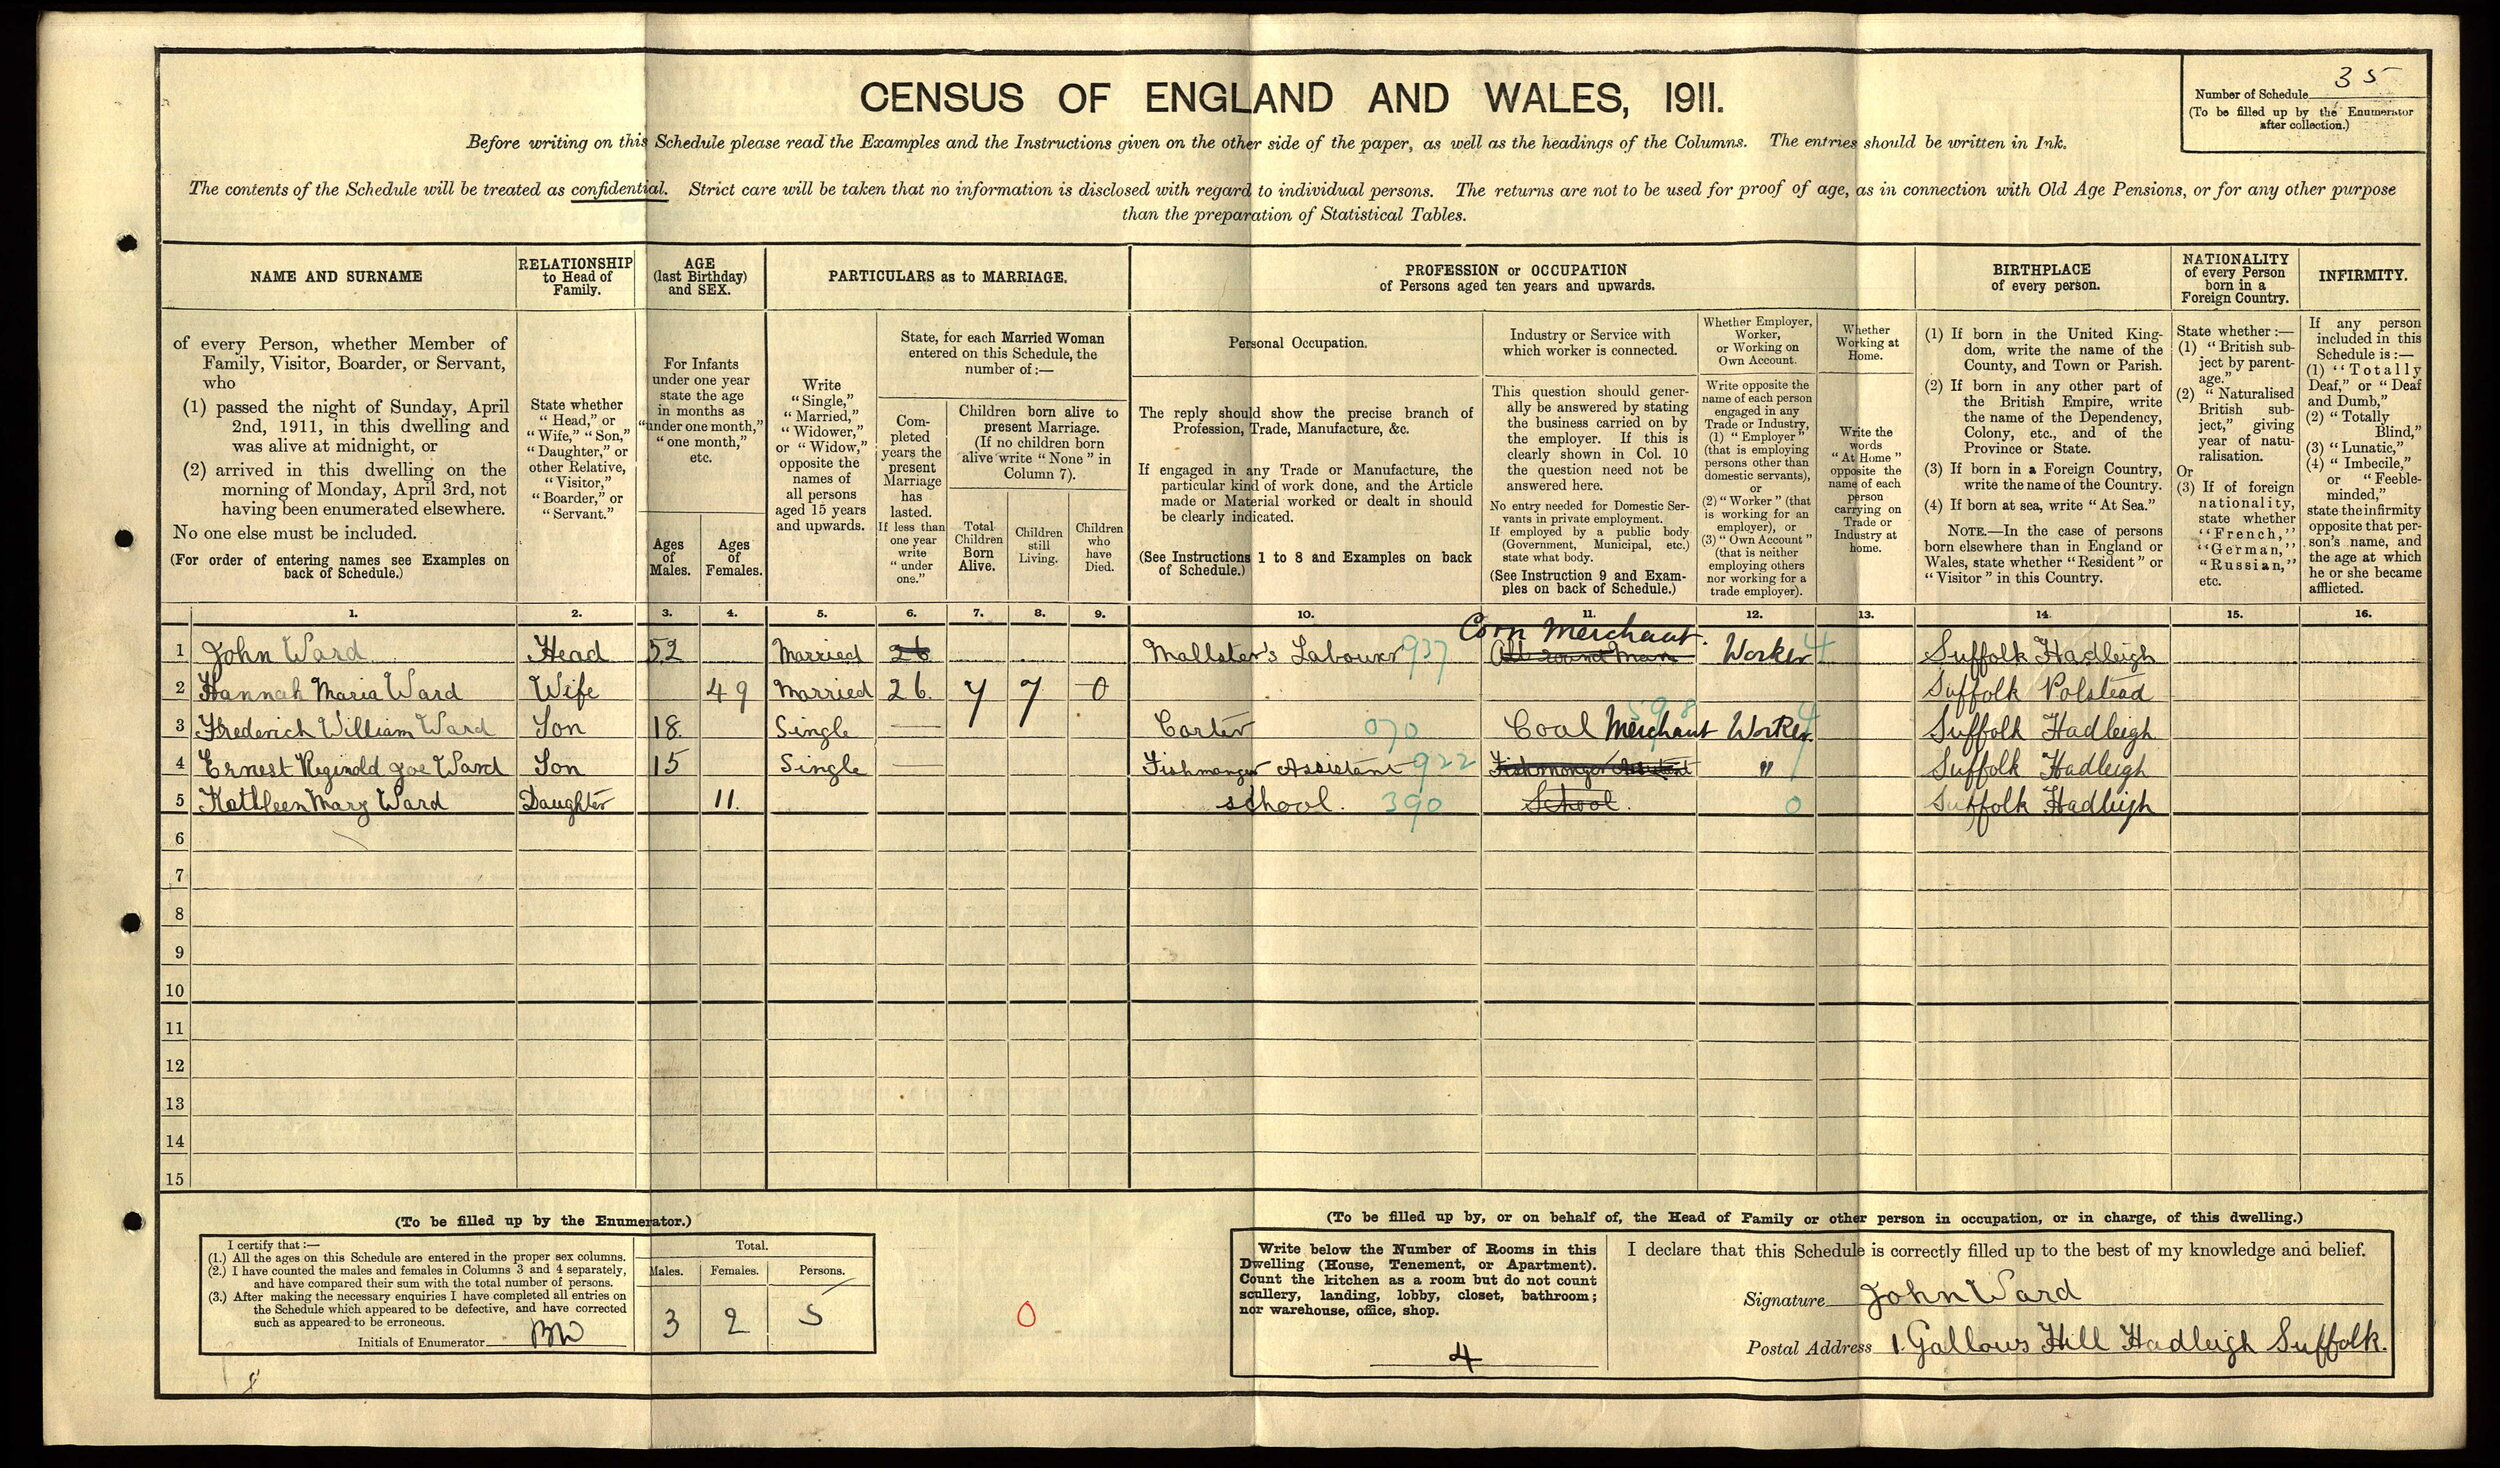 anc 1911 census Ernest Ward.jpg